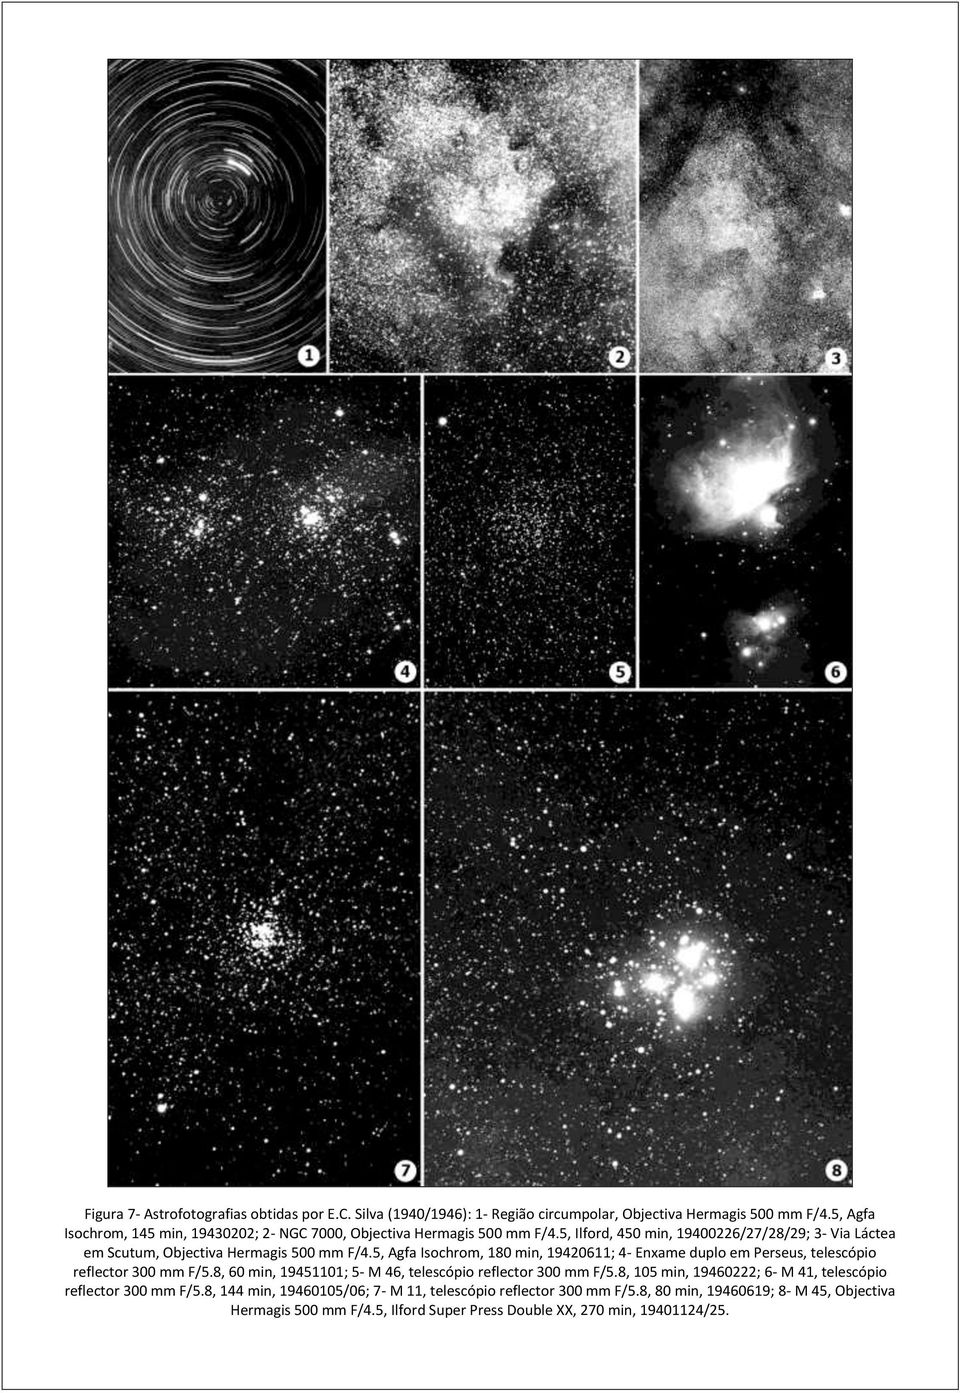 5, Ilford, 450 min, 19400226/27/28/29; 3- Via Láctea em Scutum, Objectiva Hermagis 500 mm F/4.